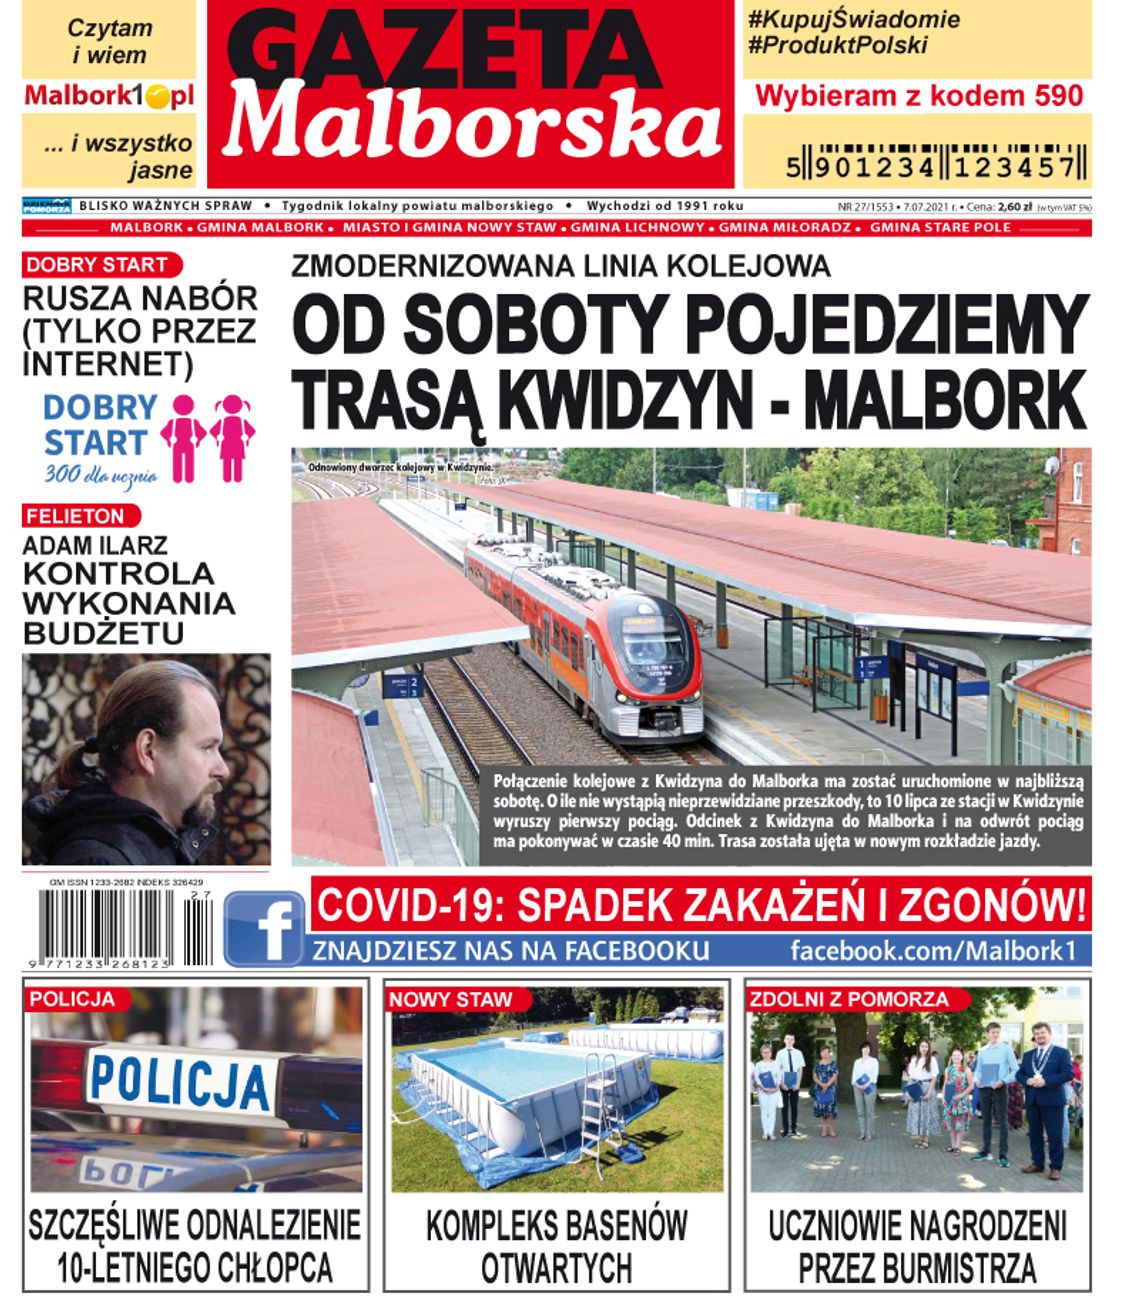 Najnowszy numer Gazety Malborskiej już w sprzedaży. Świeże informacje z Malborka i gmin naszego powiatu już w Twoim kiosku. Co w środku?